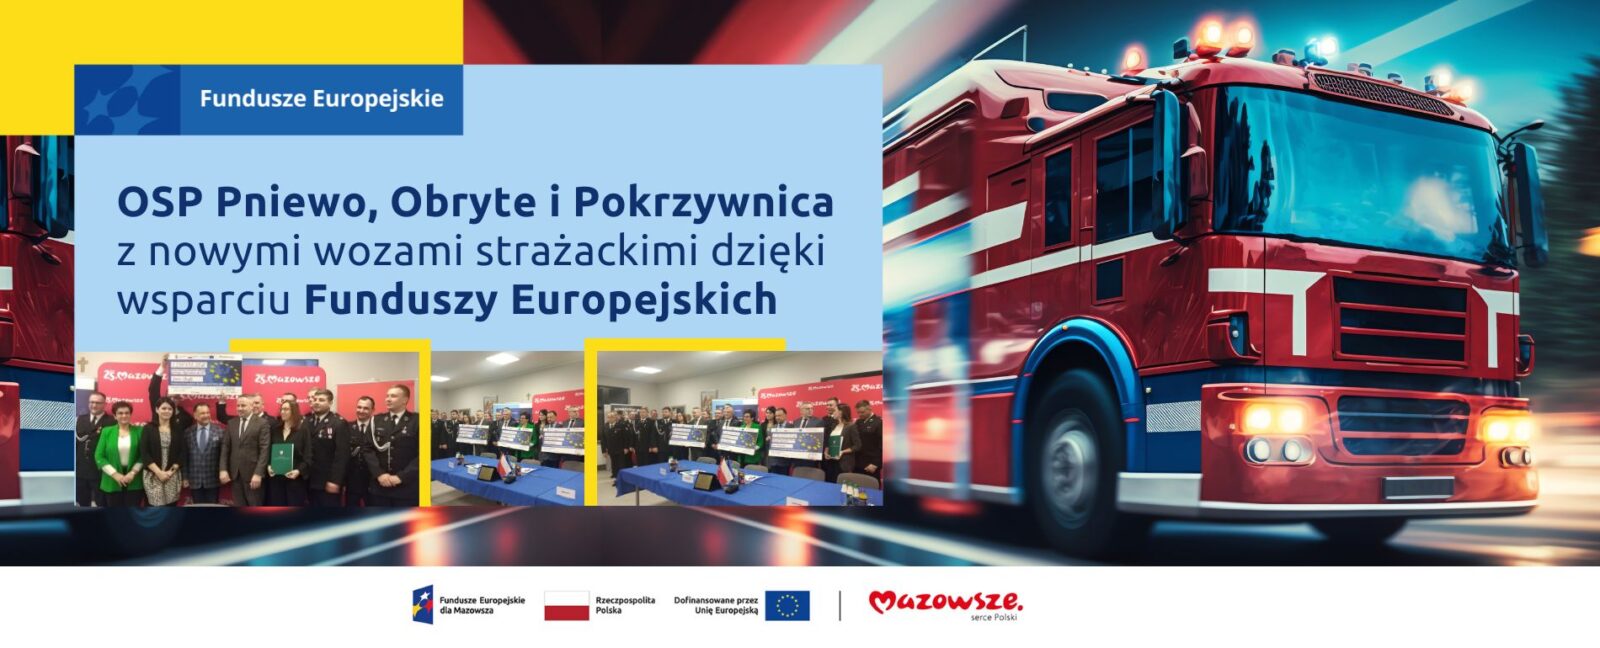 Na grafice znajduje się hasło: OSP Pniewo, Obryte i Pokrzywnica z nowymi wozami strażackimi dzięki wsparciu Funduszy Europejskich. W tle zdjęcie wozu strażackiego oraz zdjęcia z podpisania umów.